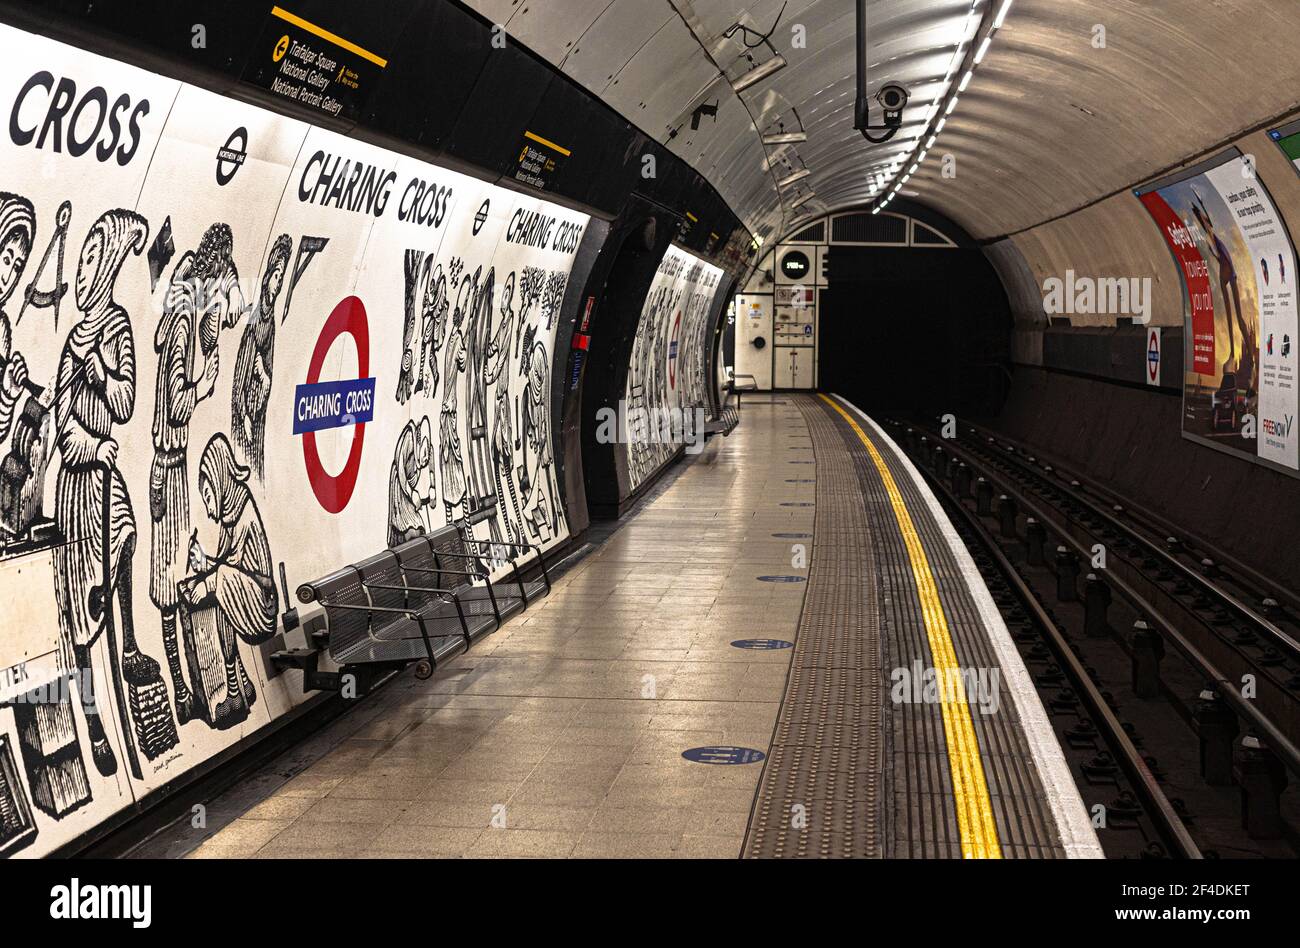 Une plate-forme vide à la station de métro Charing Cross, Londres, Angleterre, Royaume-Uni. Banque D'Images